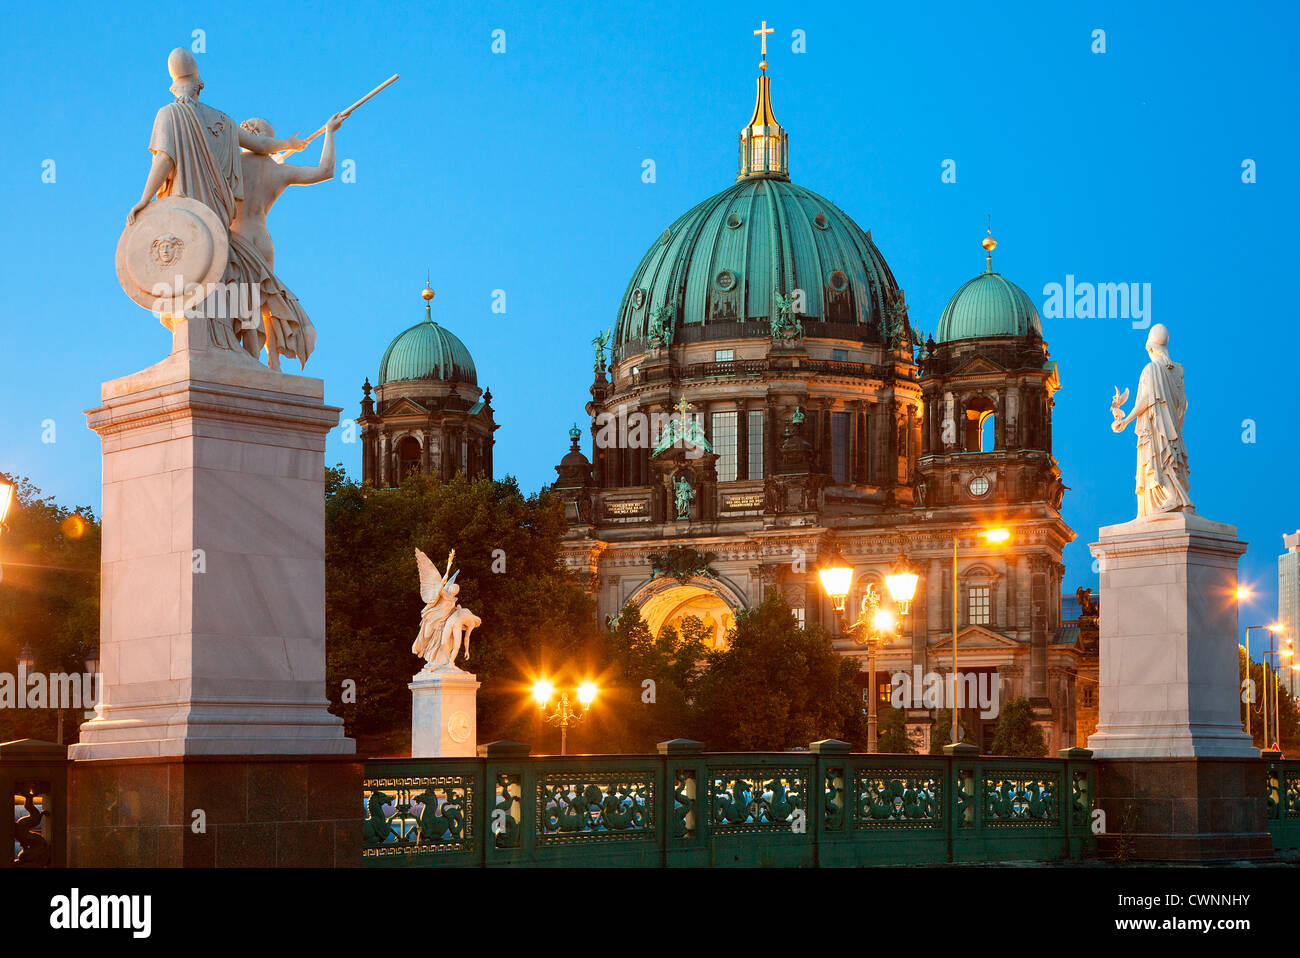 L'Europe, Allemagne, Berlin, la cathédrale de Berlin au crépuscule Banque D'Images